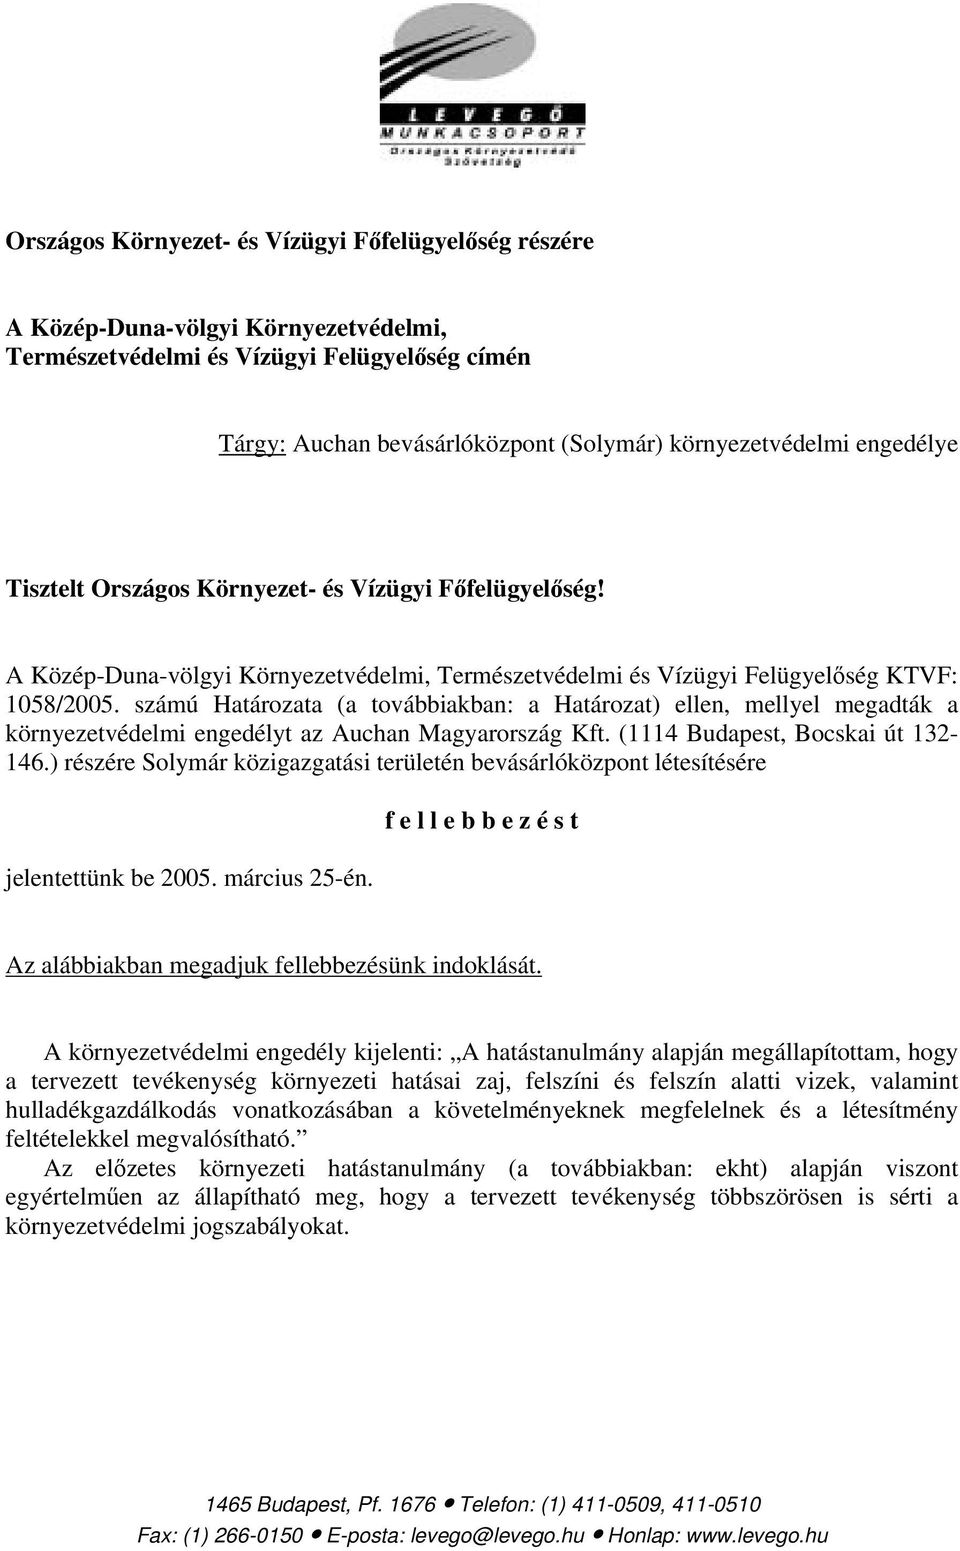 számú Határozata (a továbbiakban: a Határozat) ellen, mellyel megadták a környezetvédelmi engedélyt az Auchan Magyarország Kft. (1114 Budapest, Bocskai út 132-146.